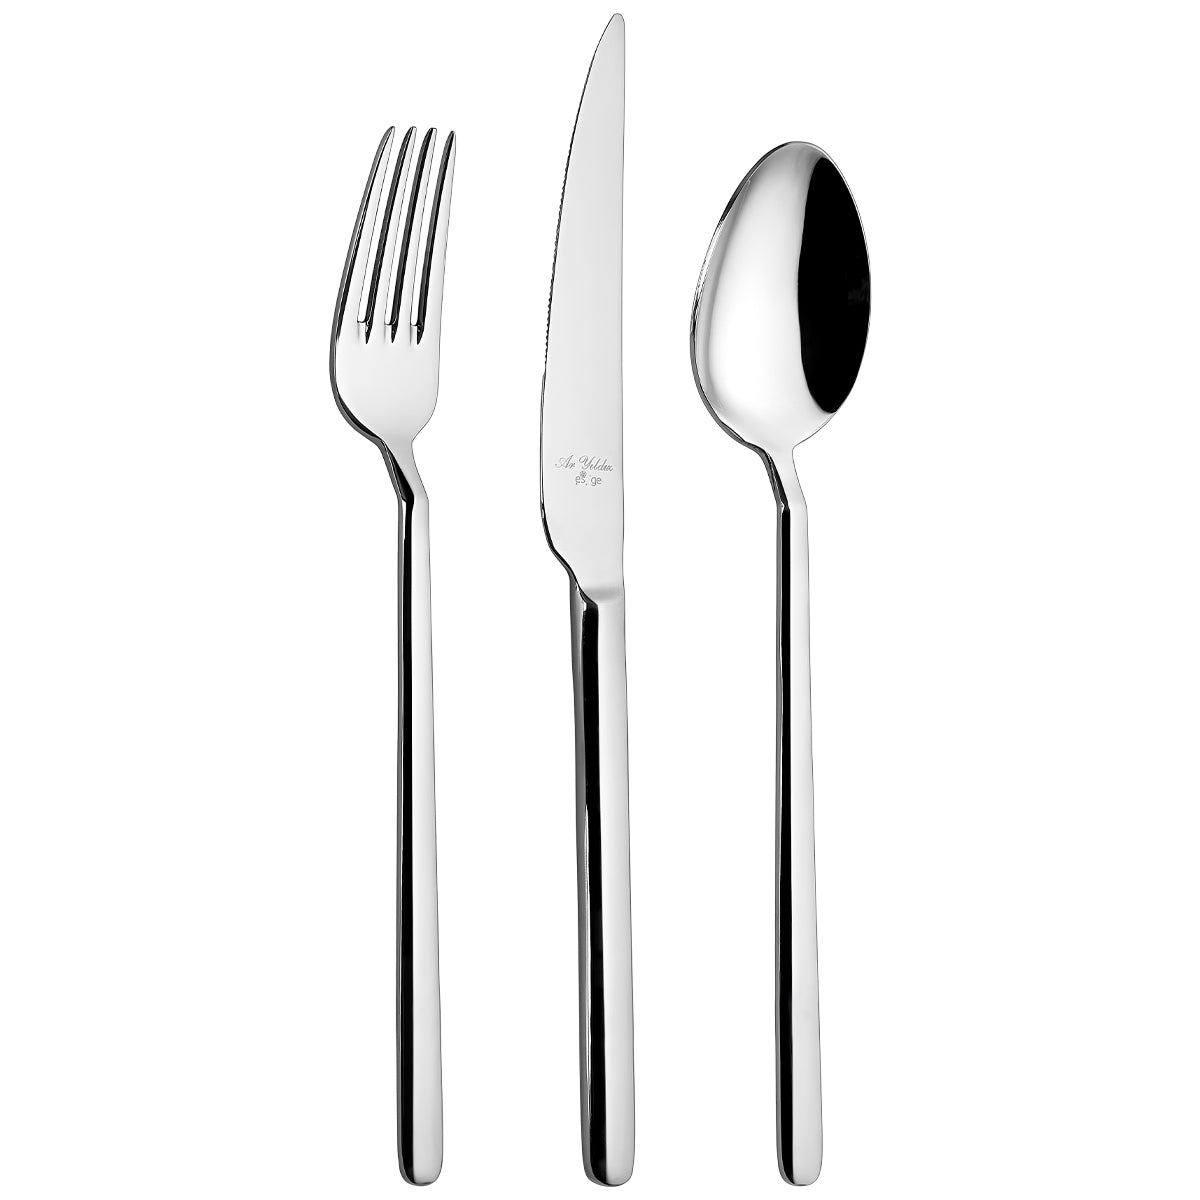 Aryıldız Style Prestige 89 Piece Fork Spoon Knife Set with Storage